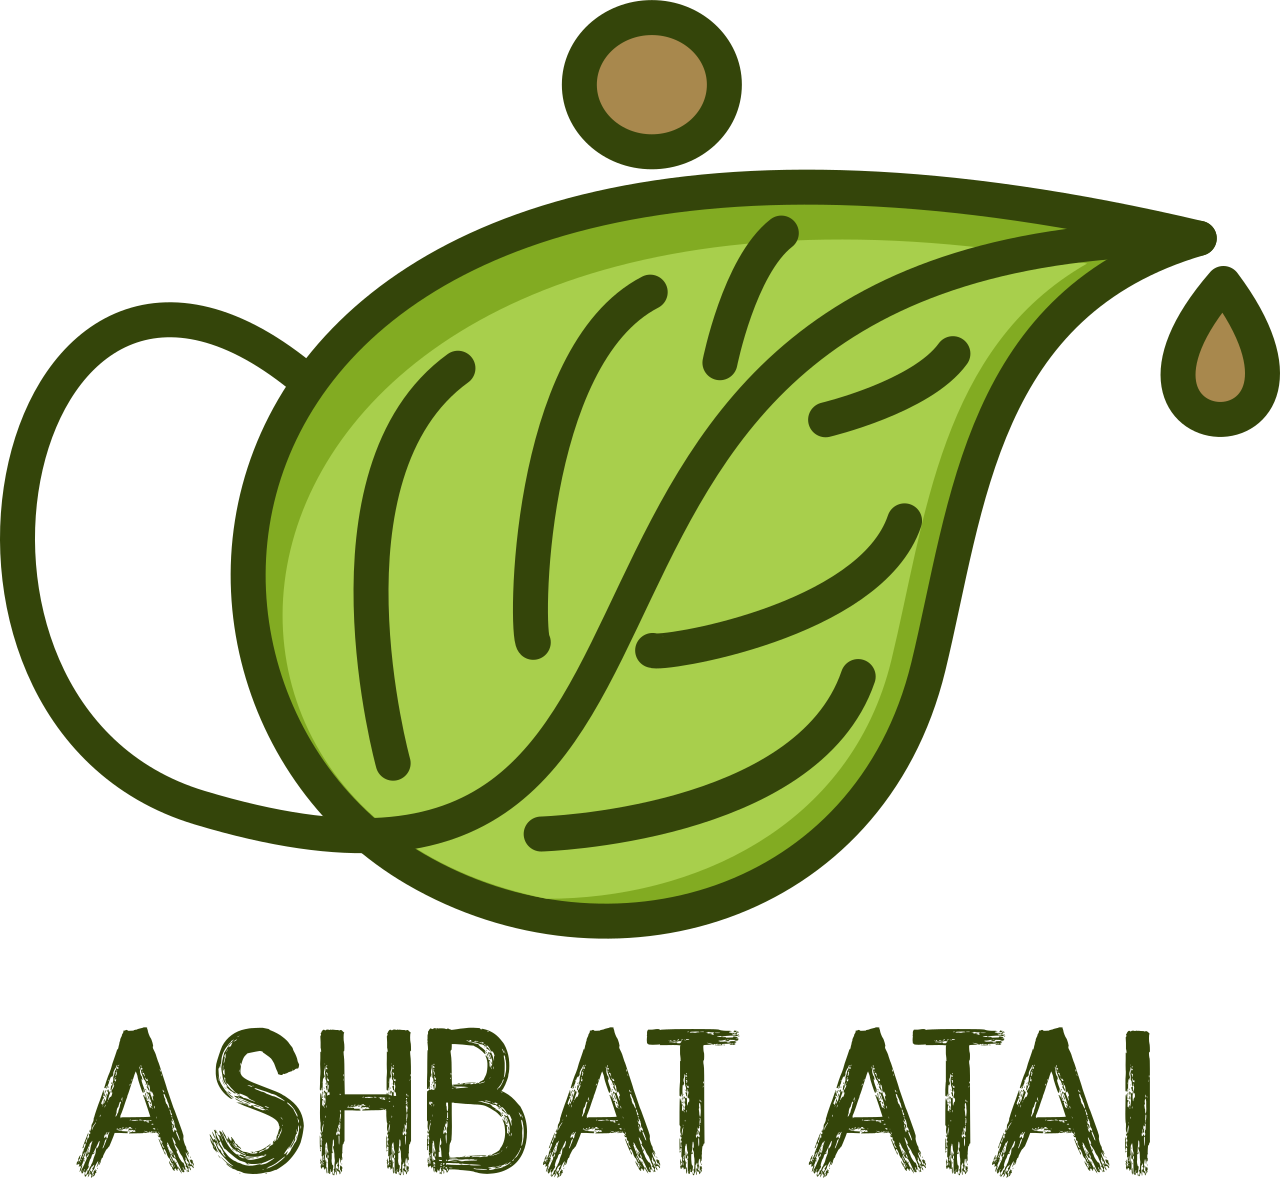 ASHBAT ATAI 's logo